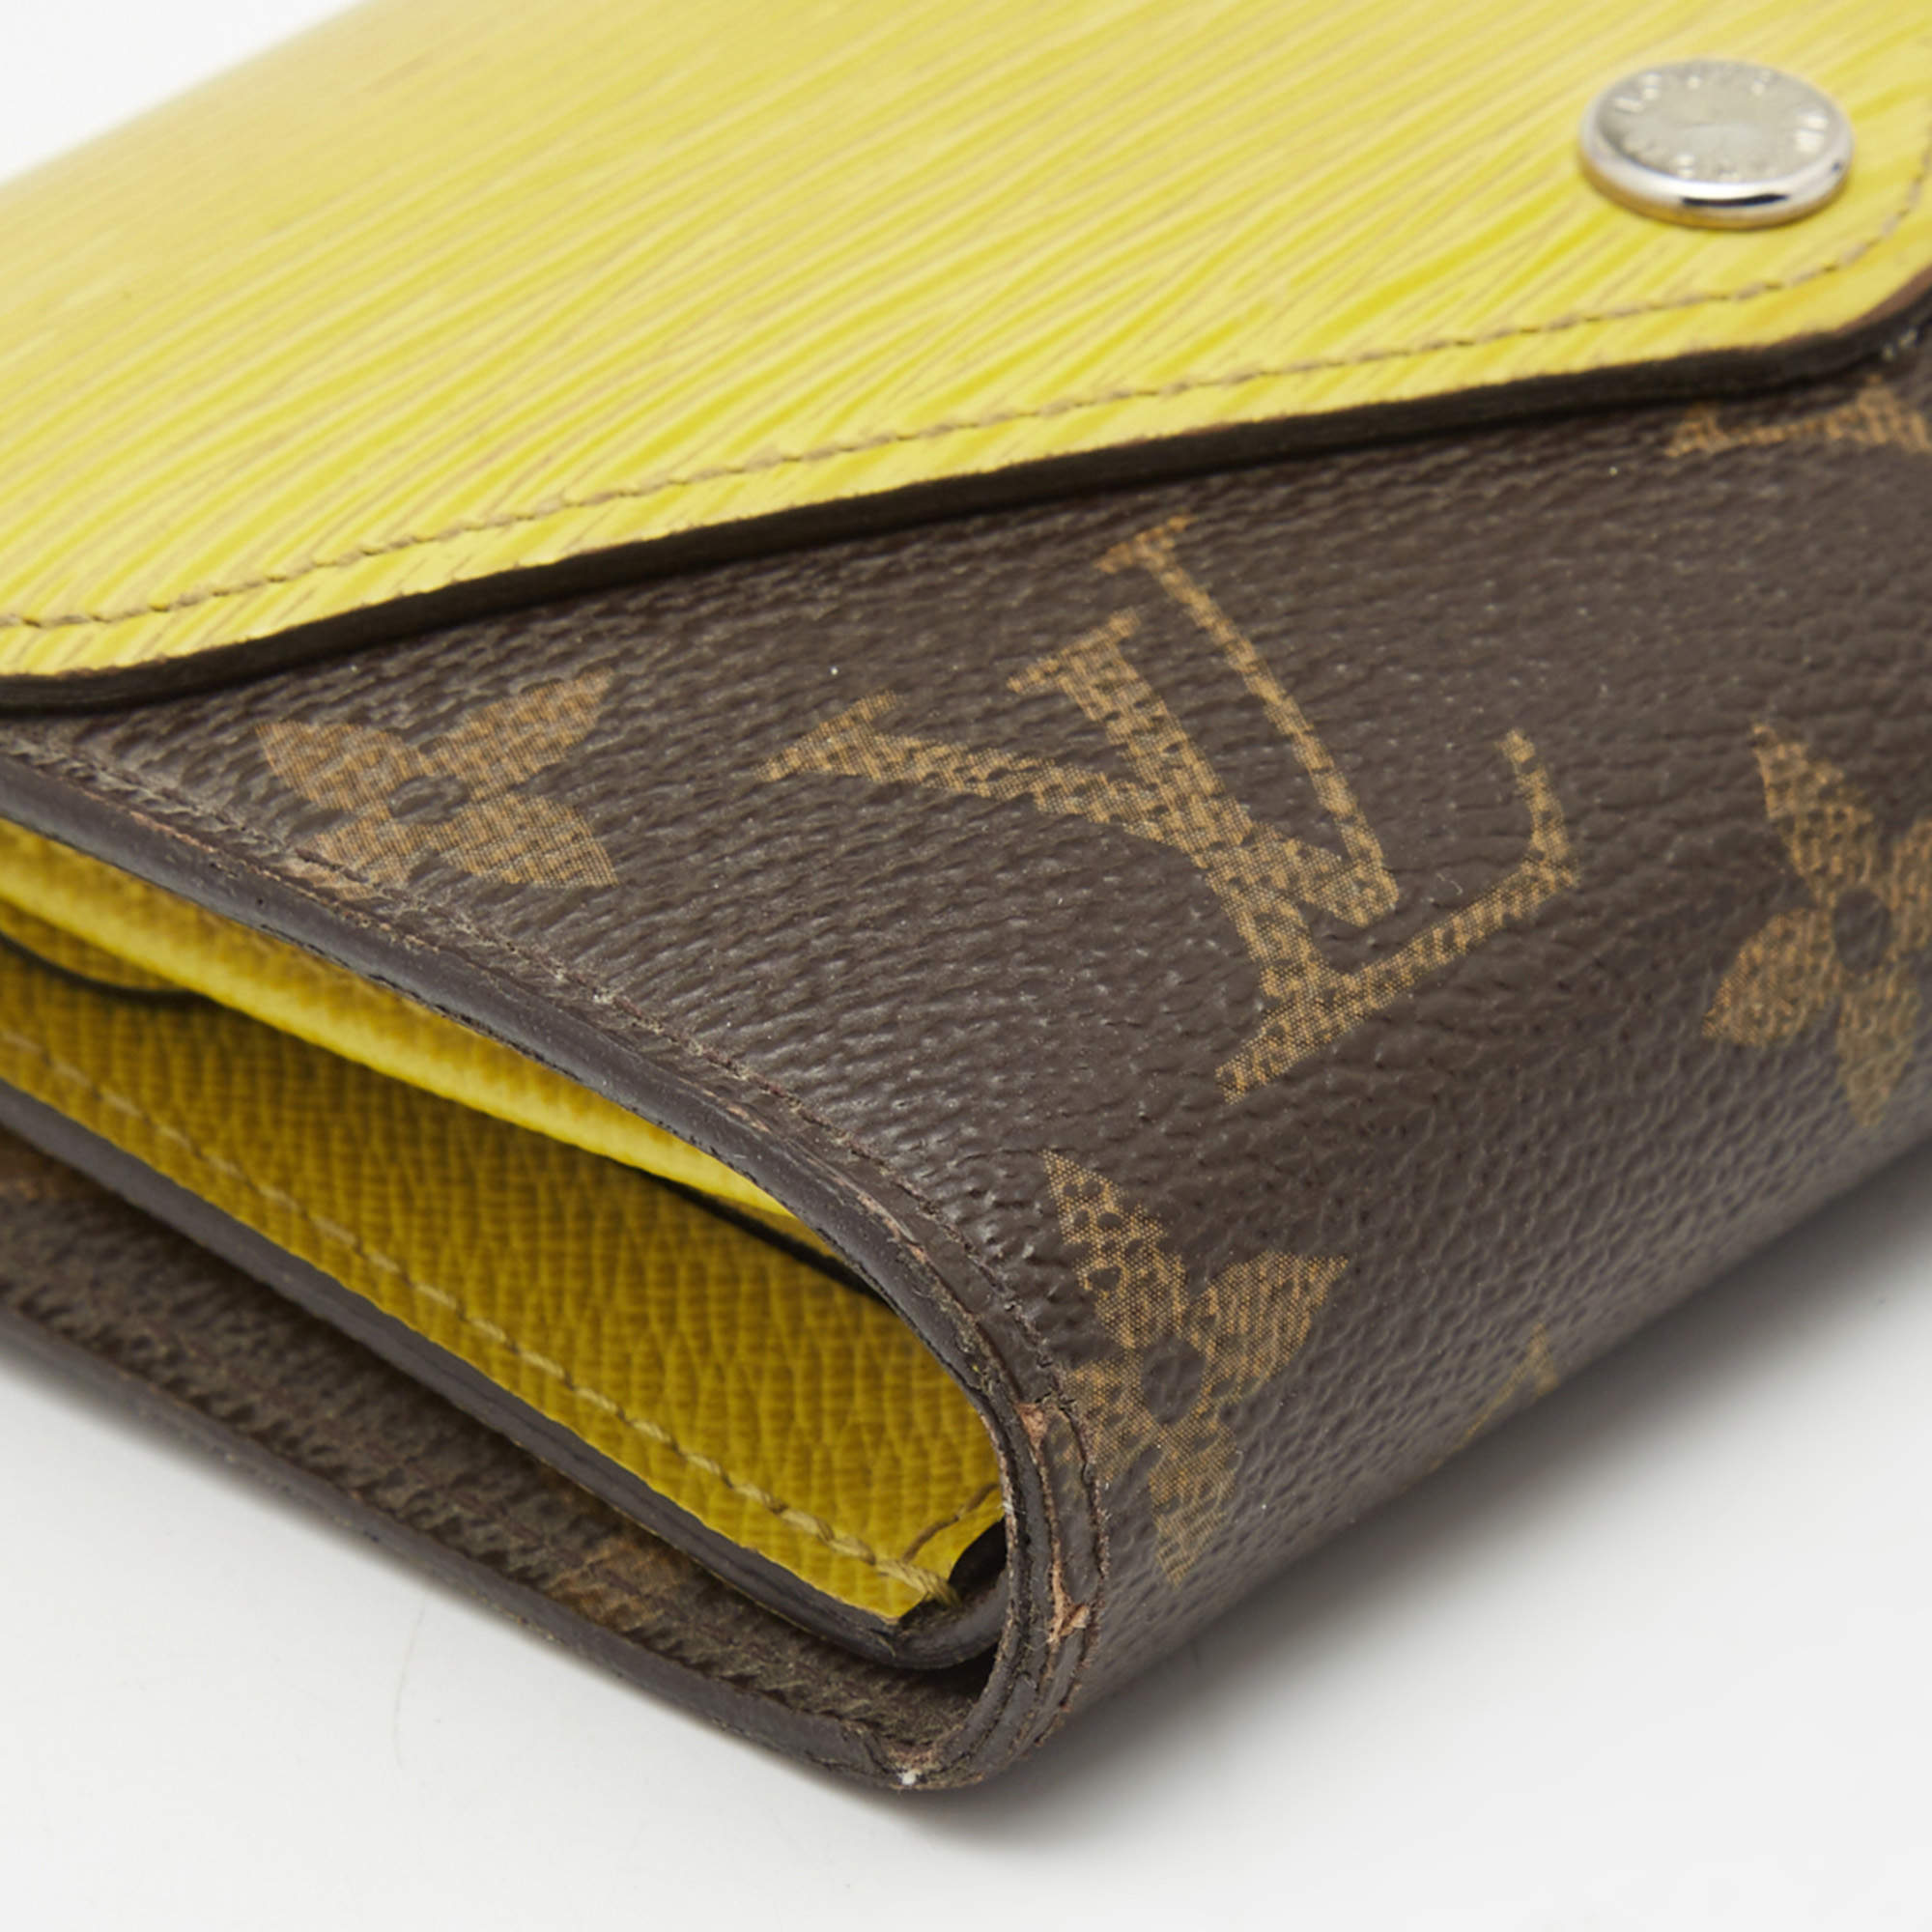 Pre-Owned Louis Vuitton Pistache Epi Marie-Lou Compact Wallet